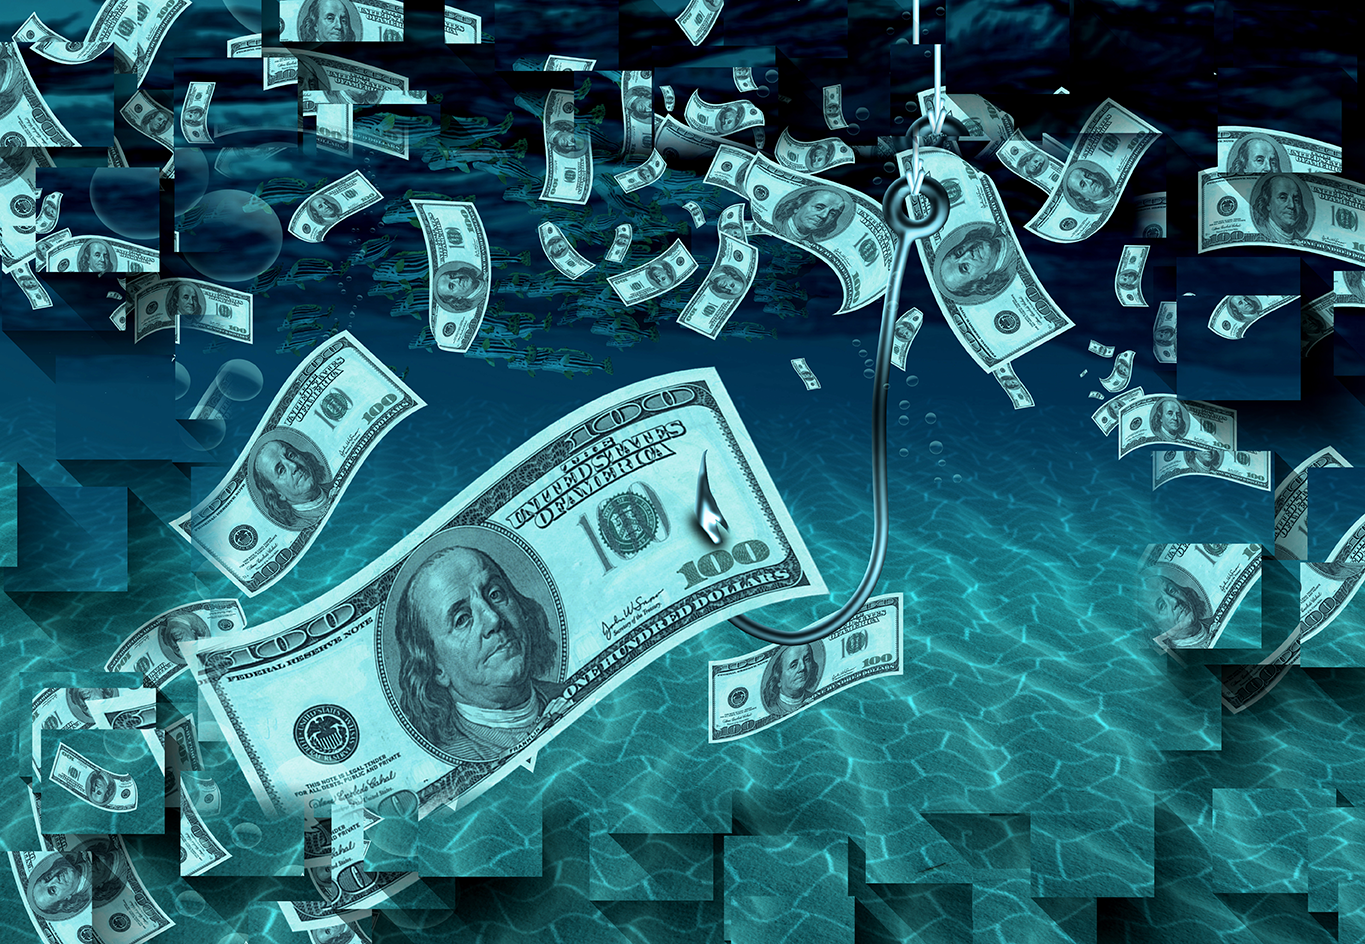 Muchos dólares flotando en el agua con un gancho de caña de pescar agarrando un dólar, representando como Airbnb reportó pérdidas millonarias